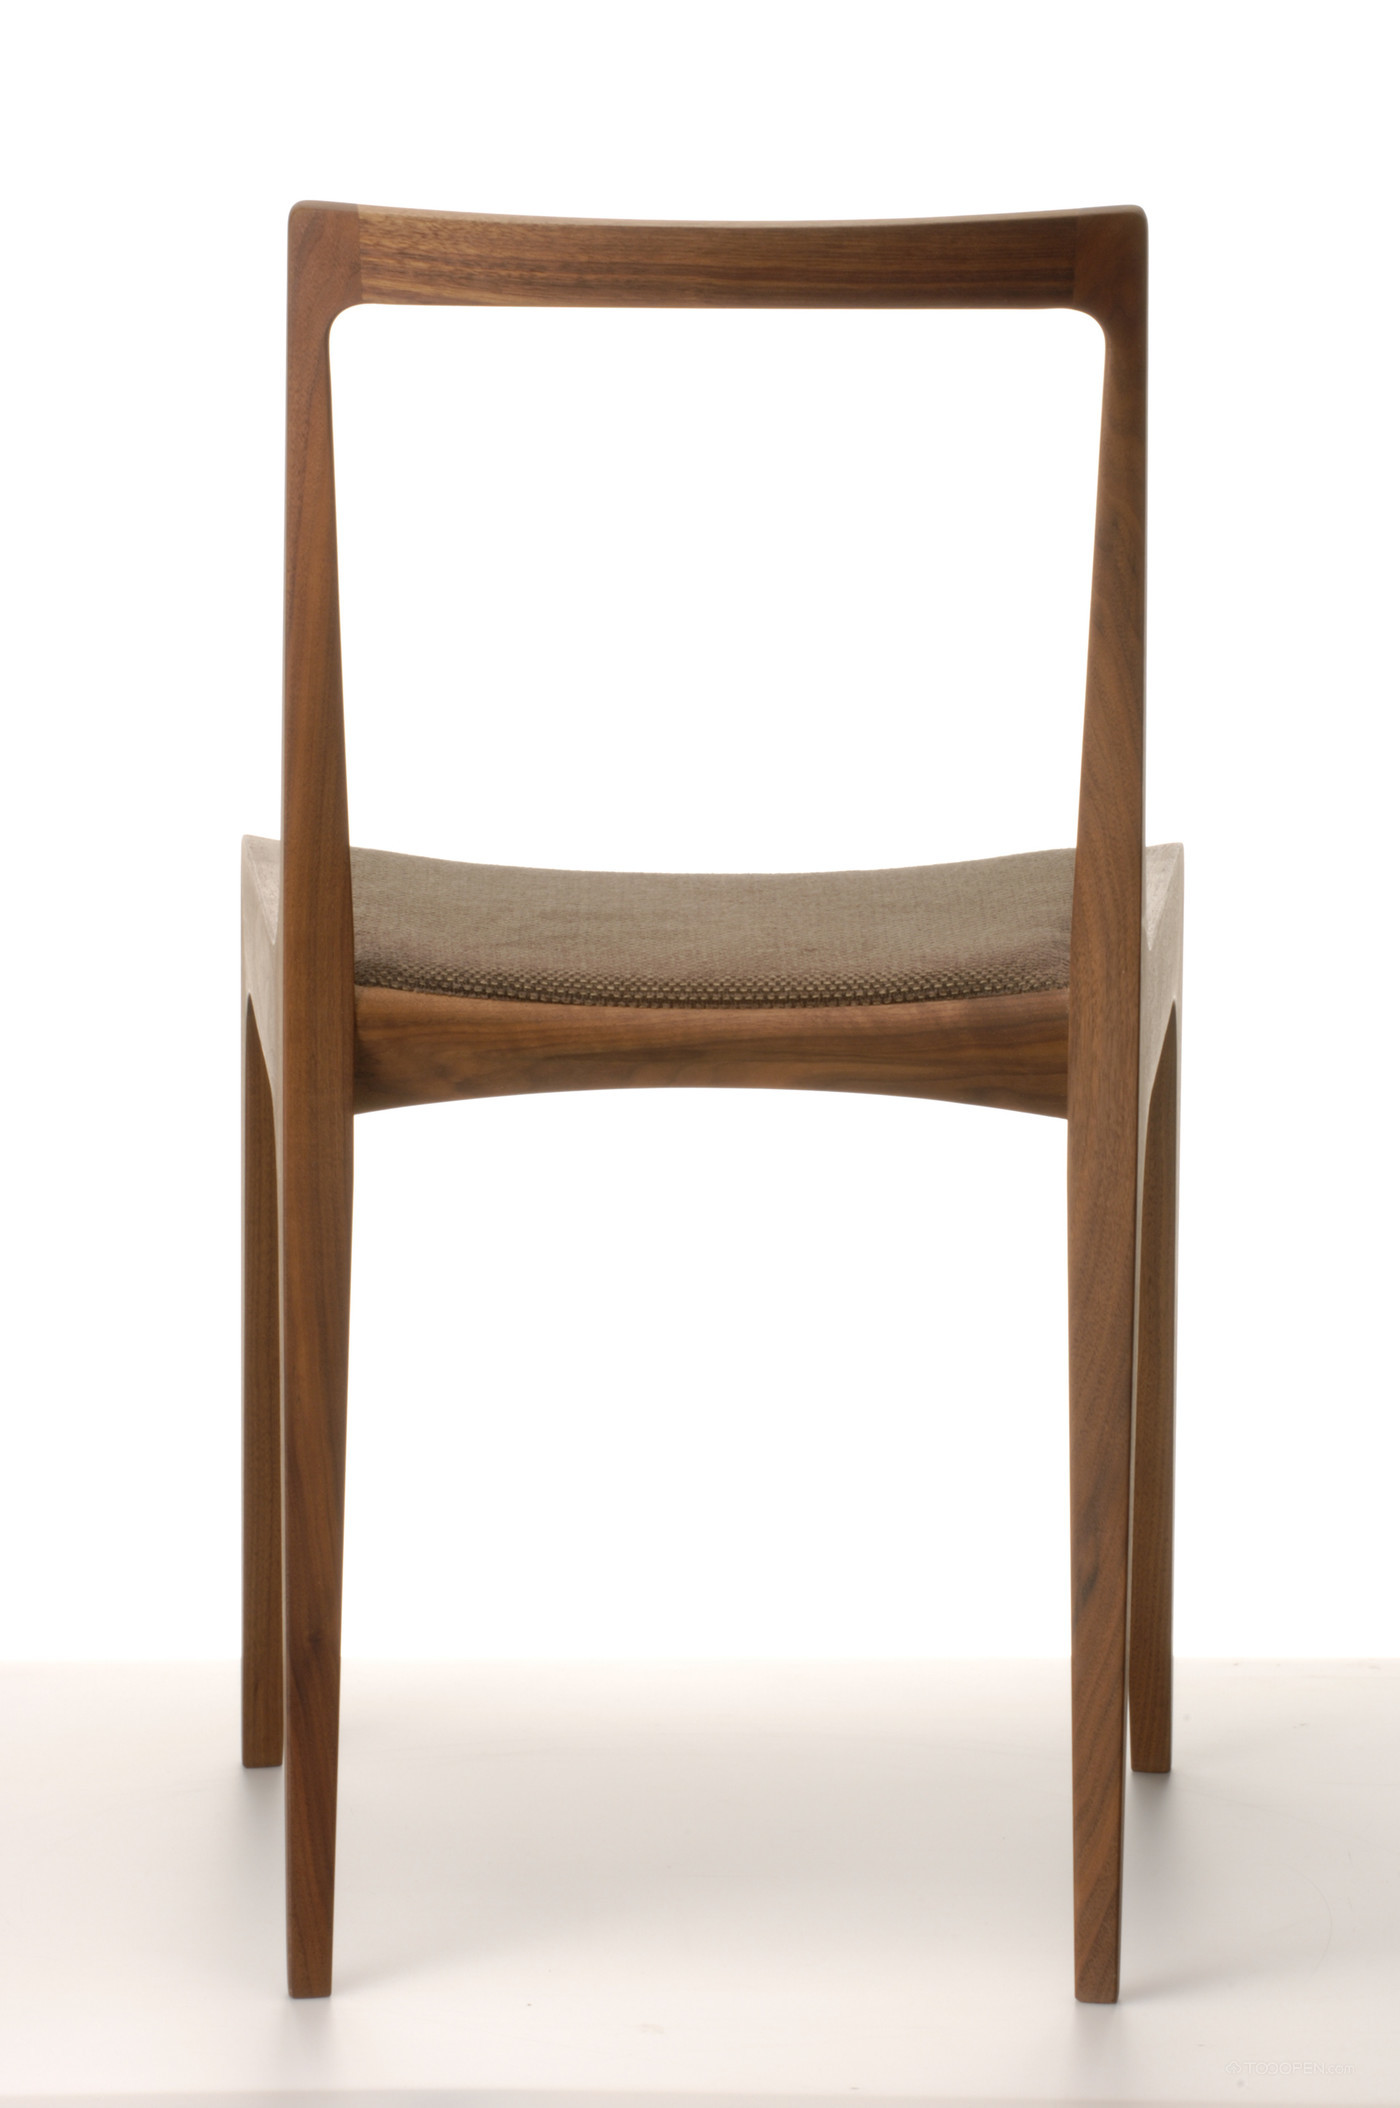 优雅纯手工实木椅家具产品设计欣赏-03